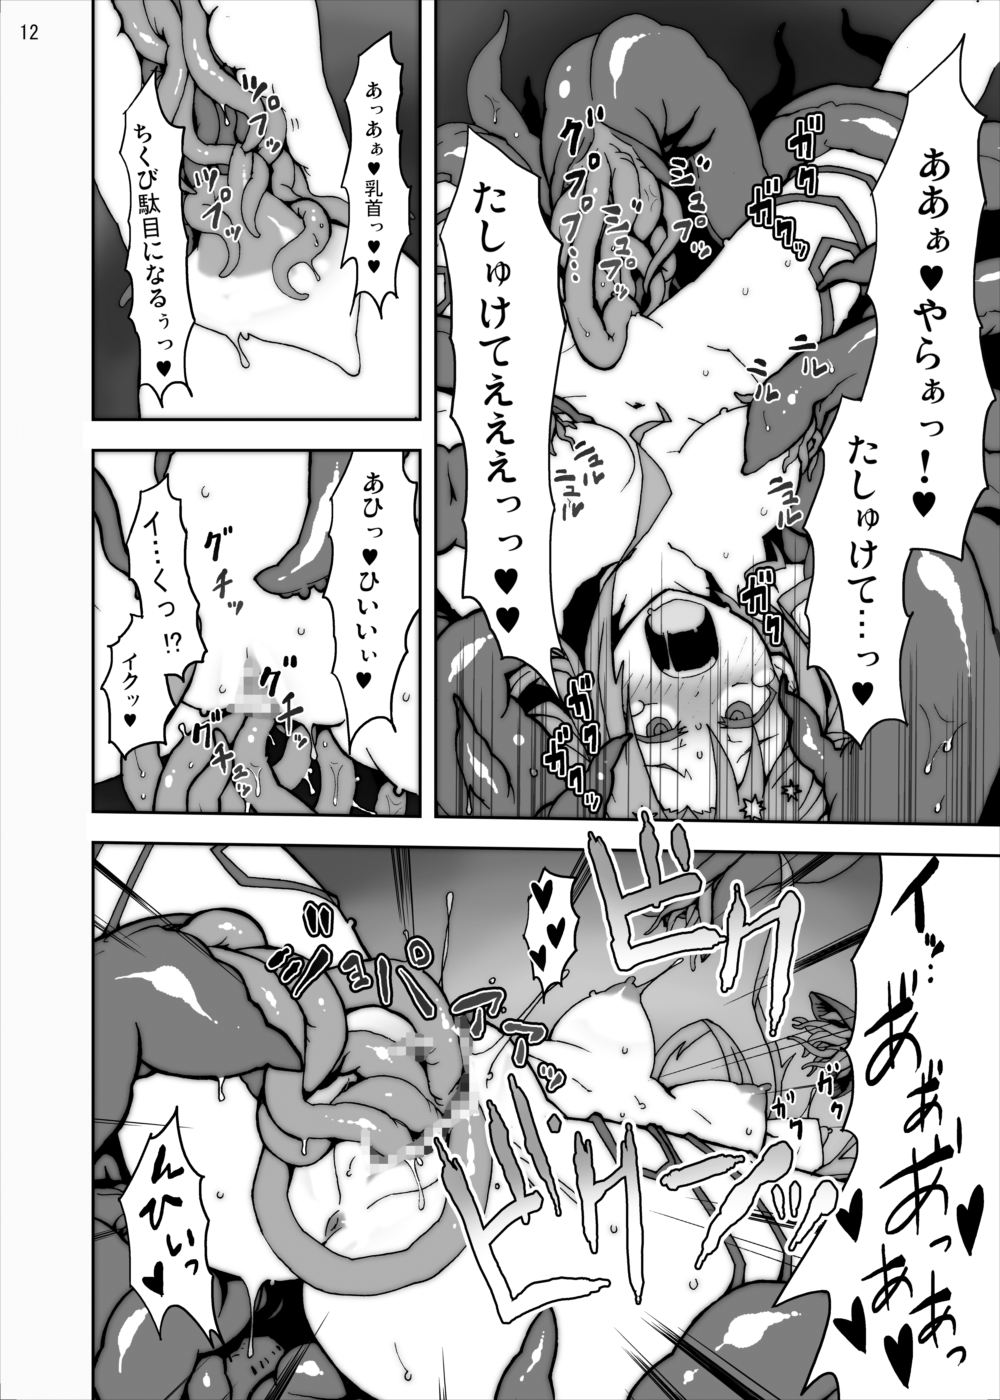 [Studio Nunchaku] Asuna in Tentacle Party Rape Online (Sword Art Online) page 11 full